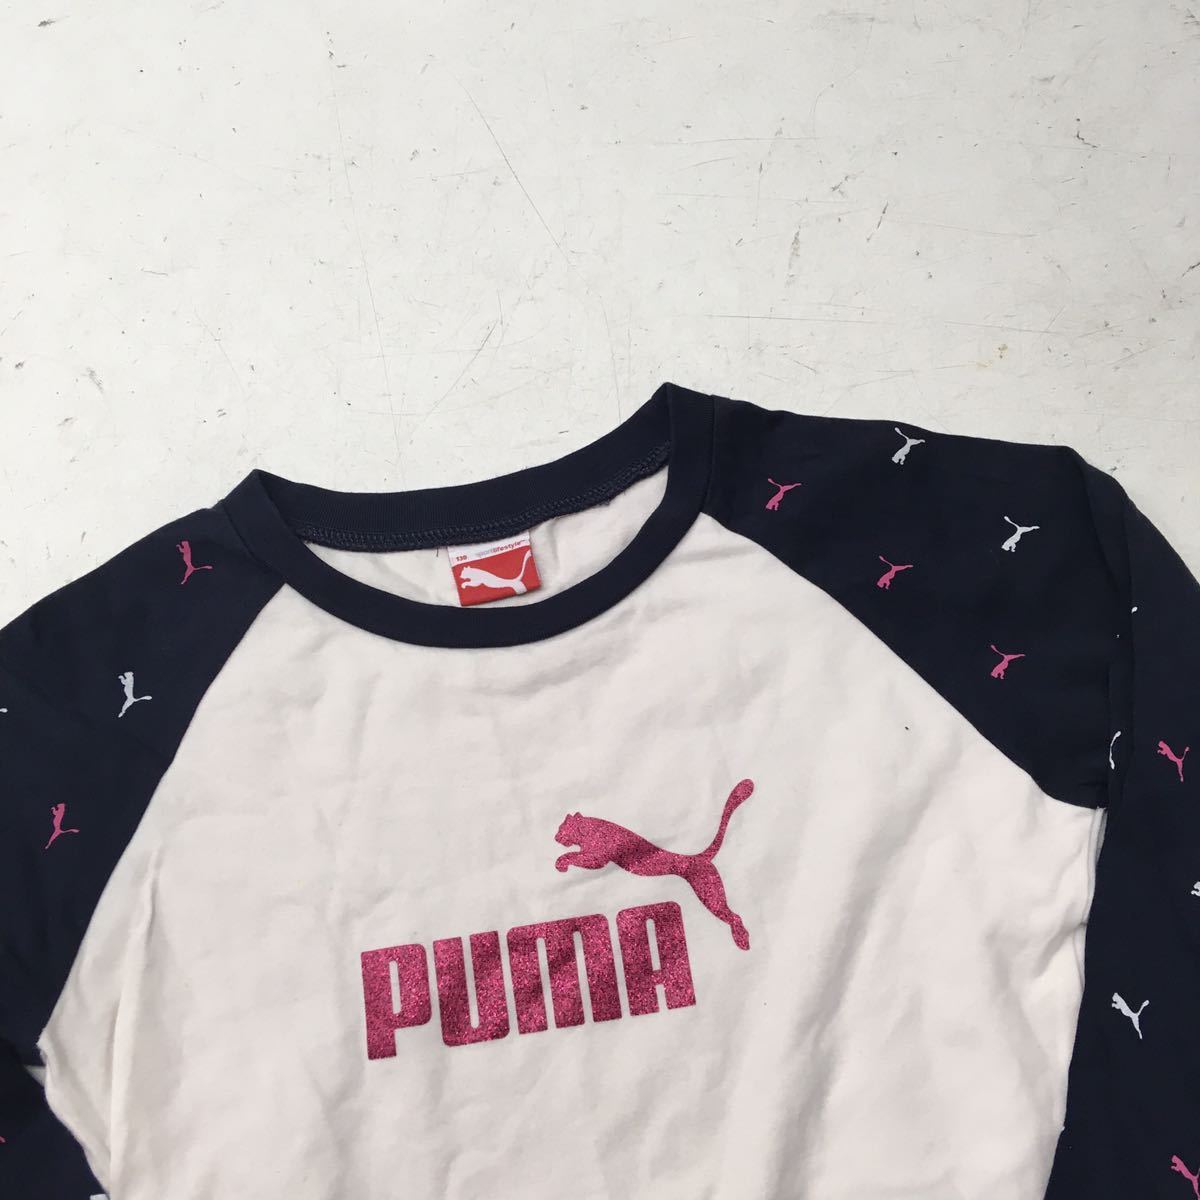  бесплатная доставка *PUMA Puma * футболка с длинным рукавом long T* девочка Kids ребенок 130 #41214sNj99